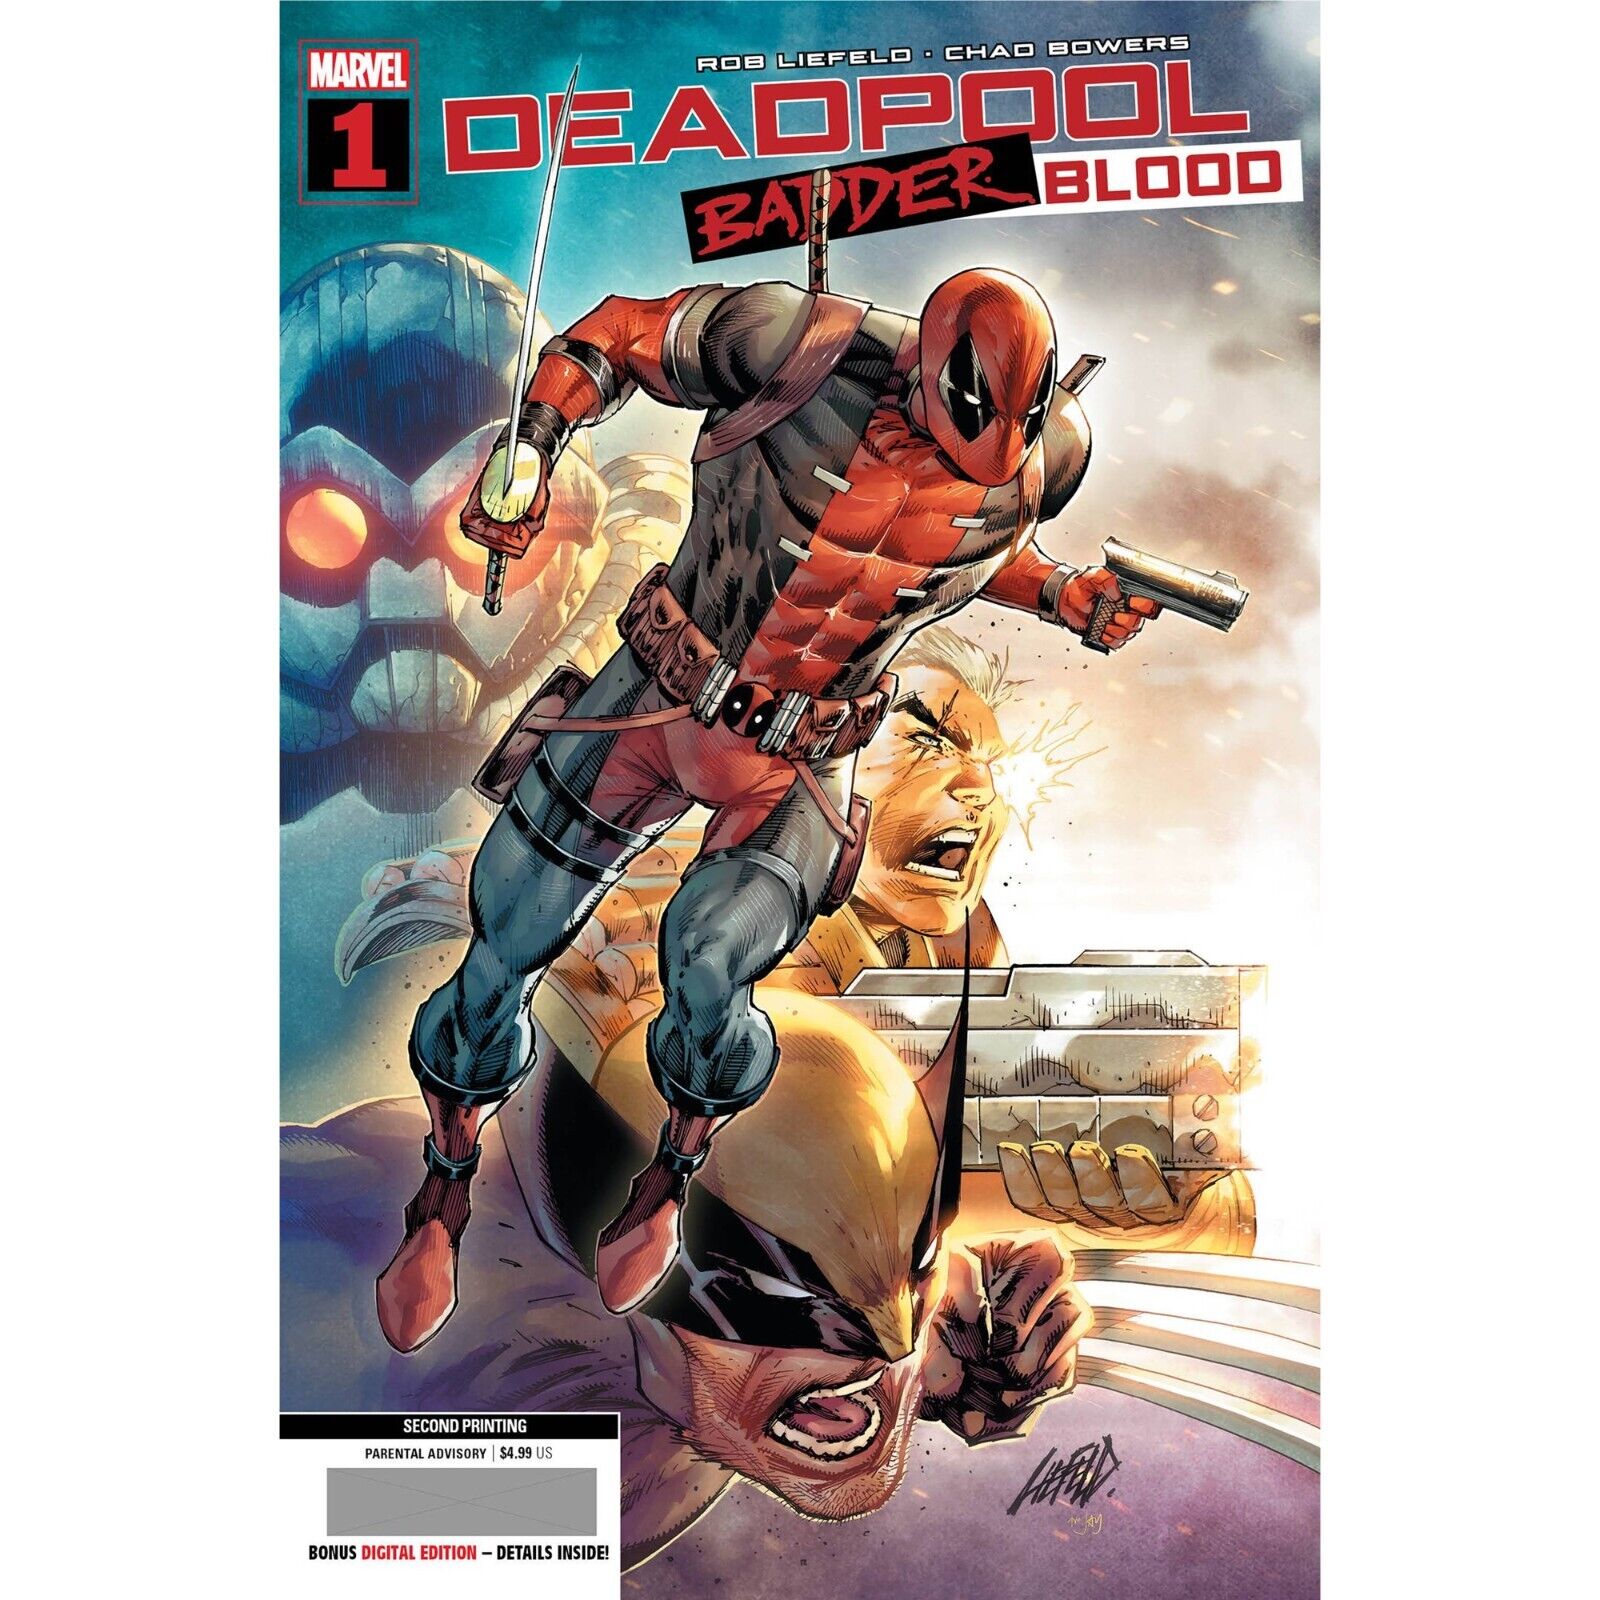 Deadpool: Badder Blood (2023) 1 2 3 4 5 | Marvel Comics | FULL RUN /COVER SELECT